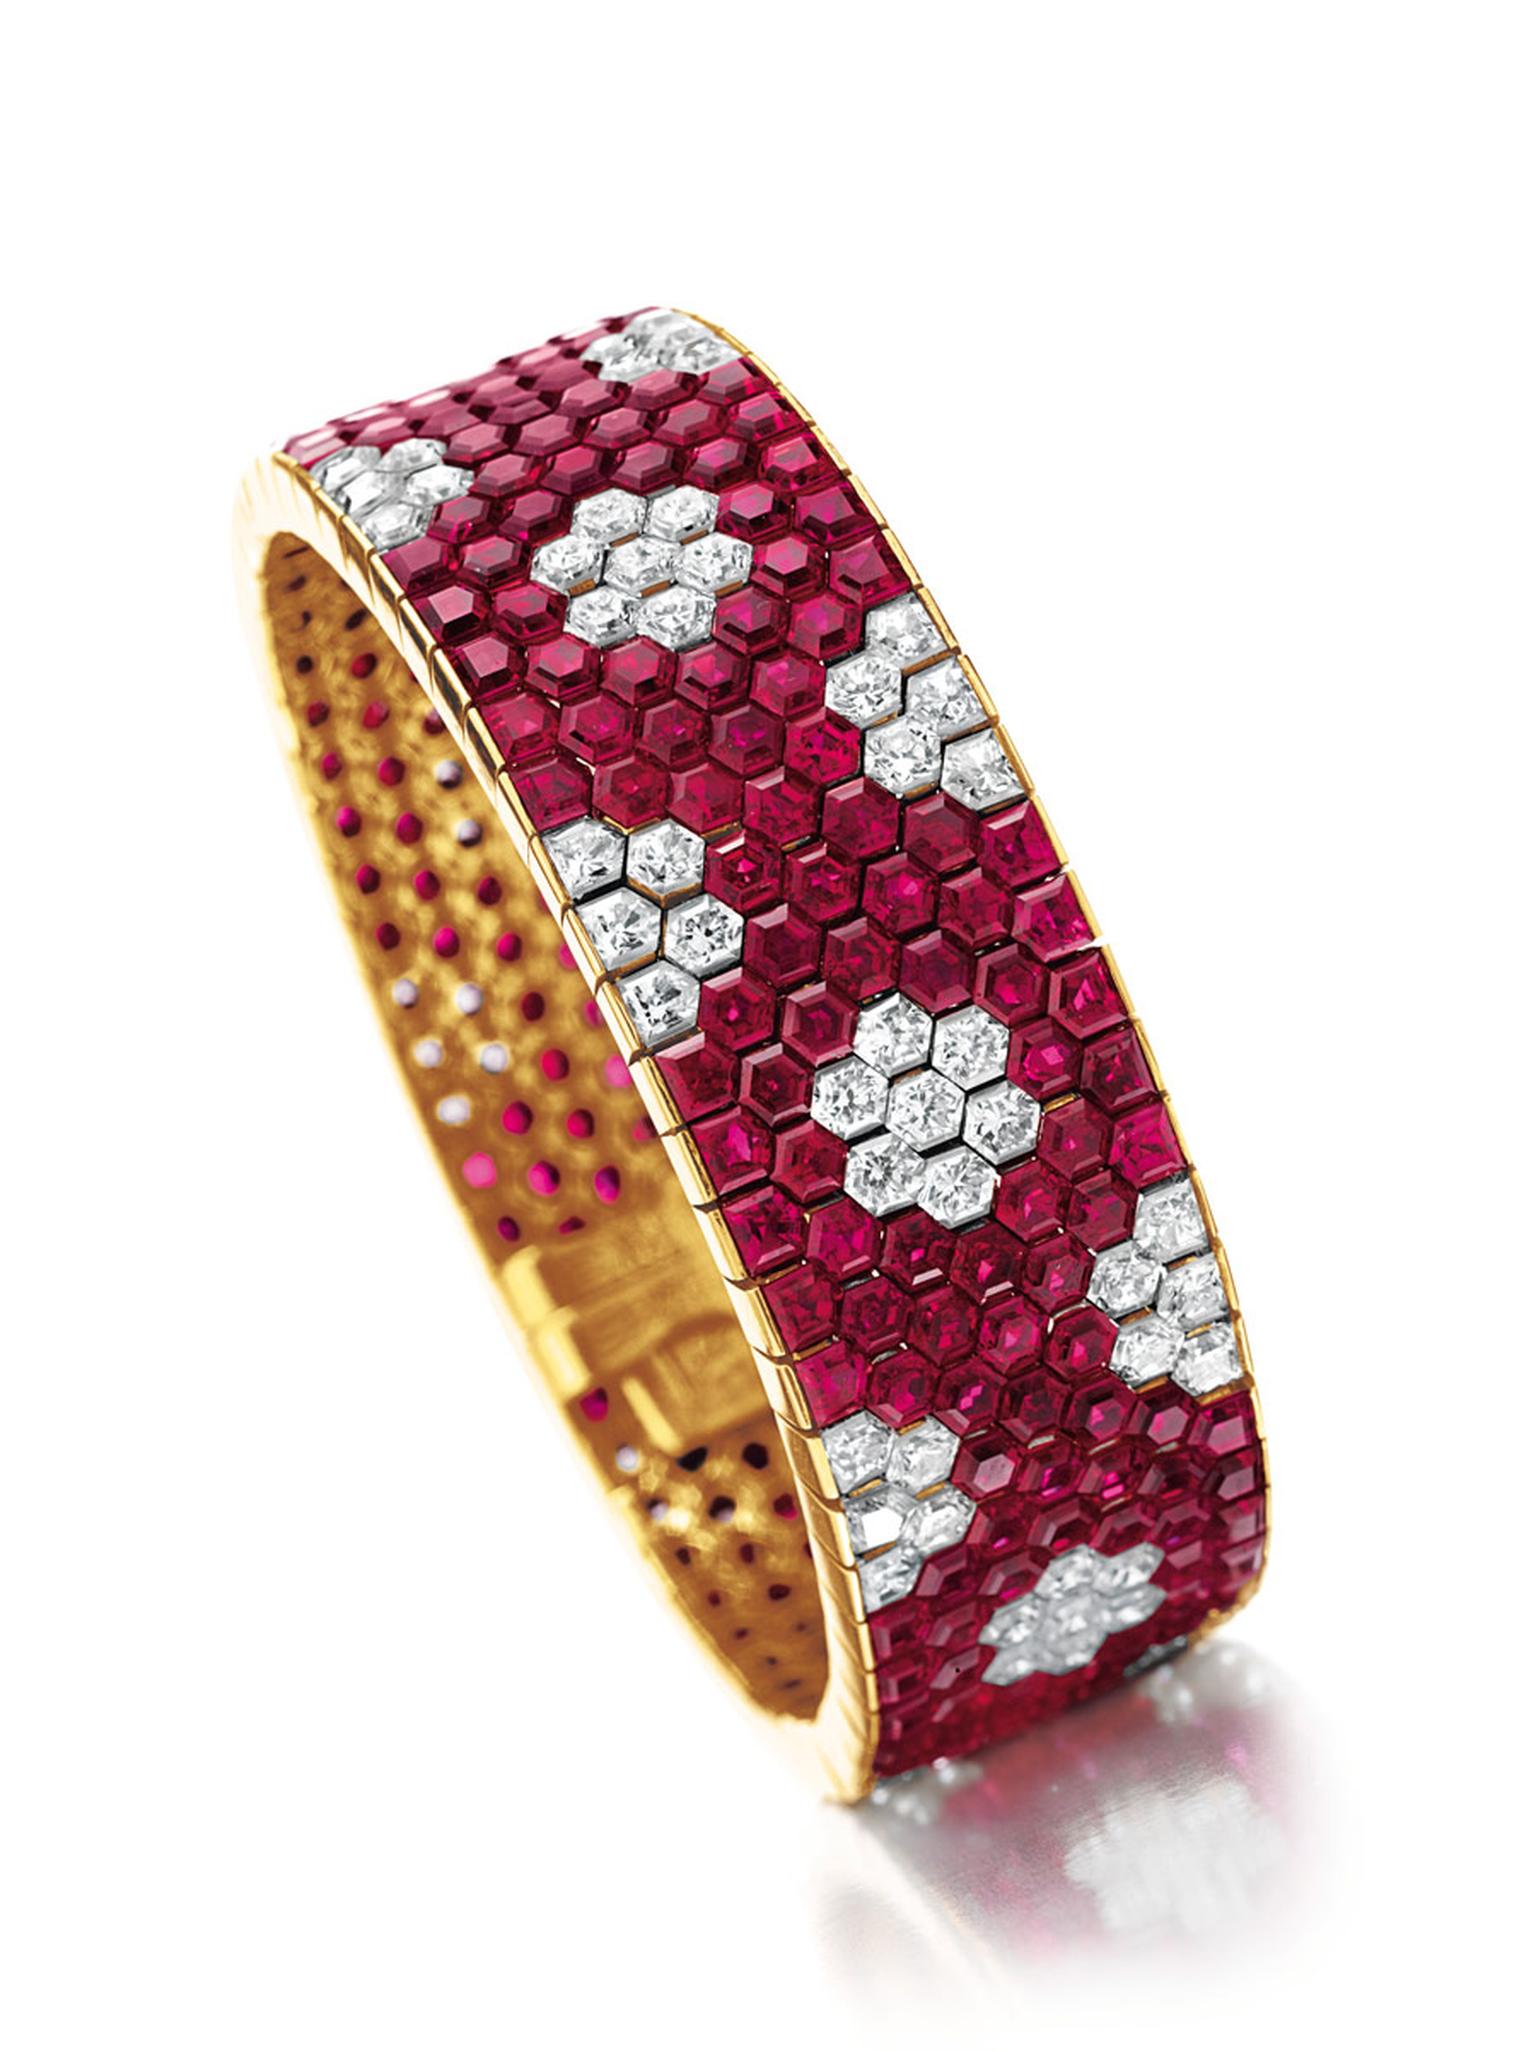 Christies-ruby-and-diamond-bracelet-by-Van-Cleef